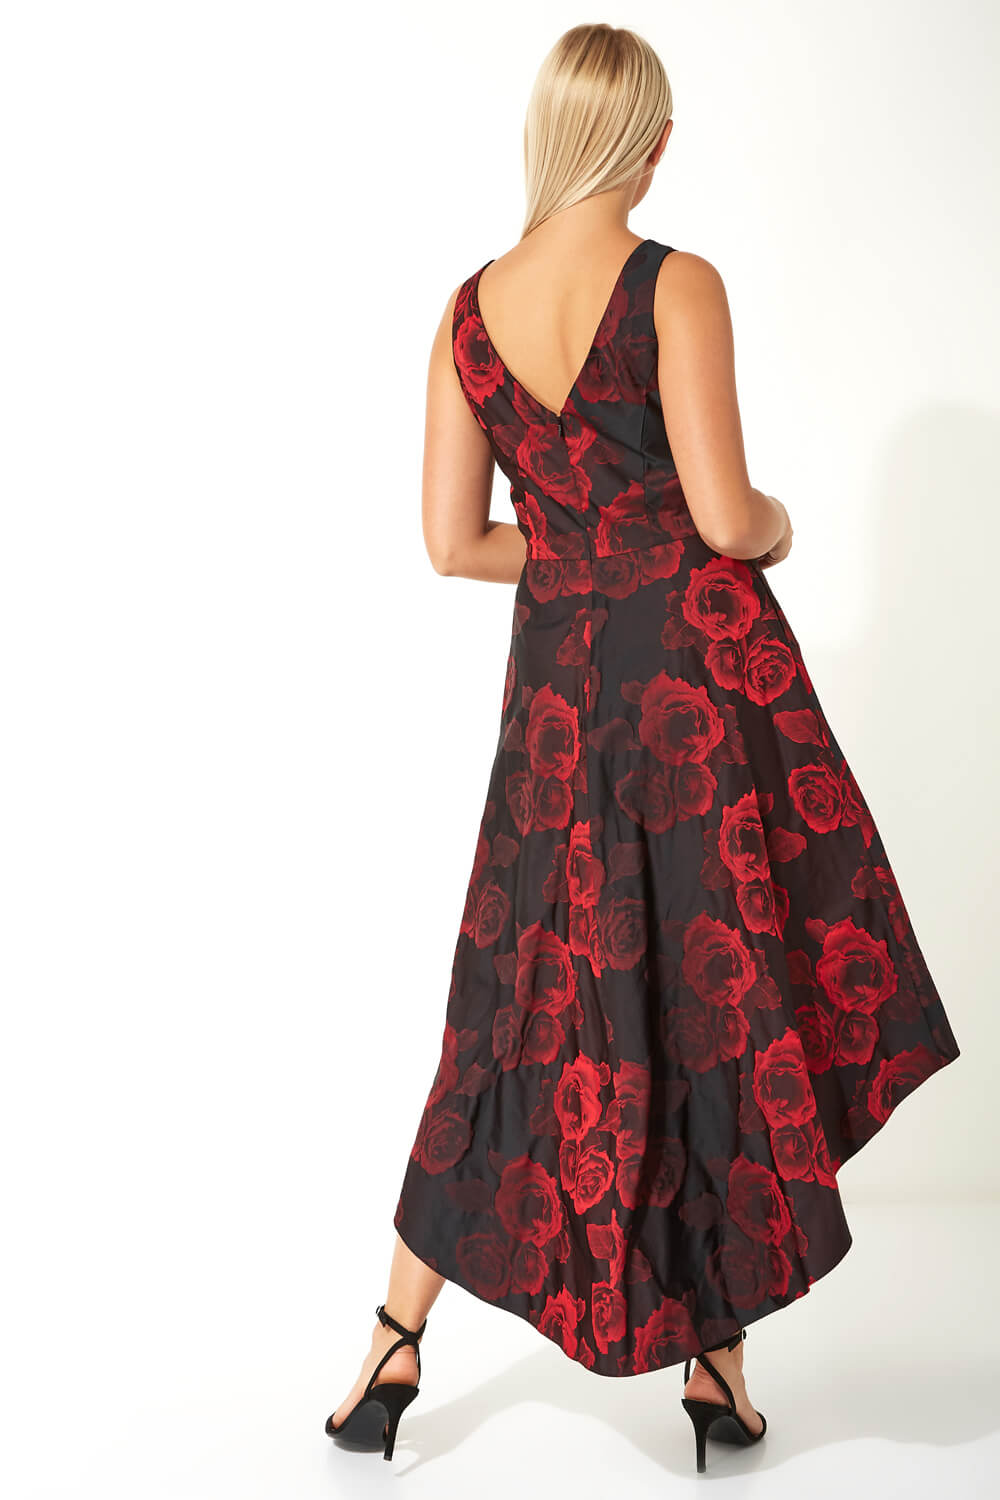 Red Rose Print Dipped Hem Dress, Image 2 of 4